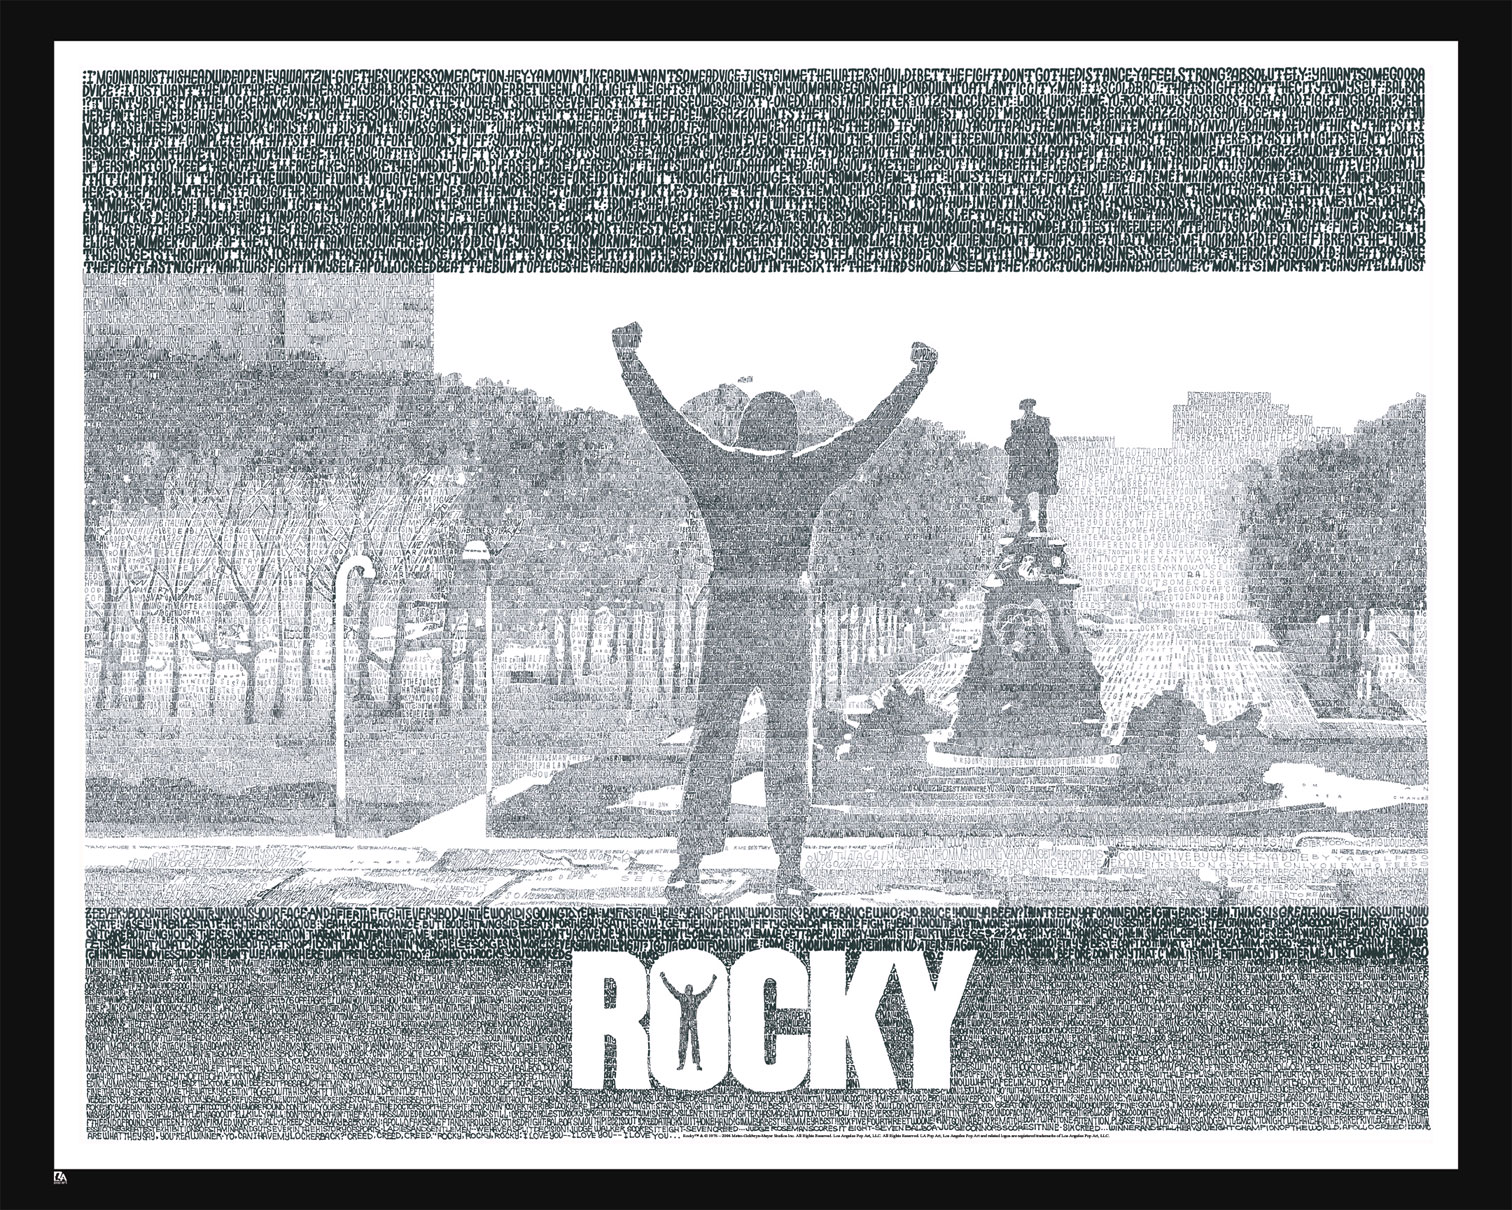 movie, rocky